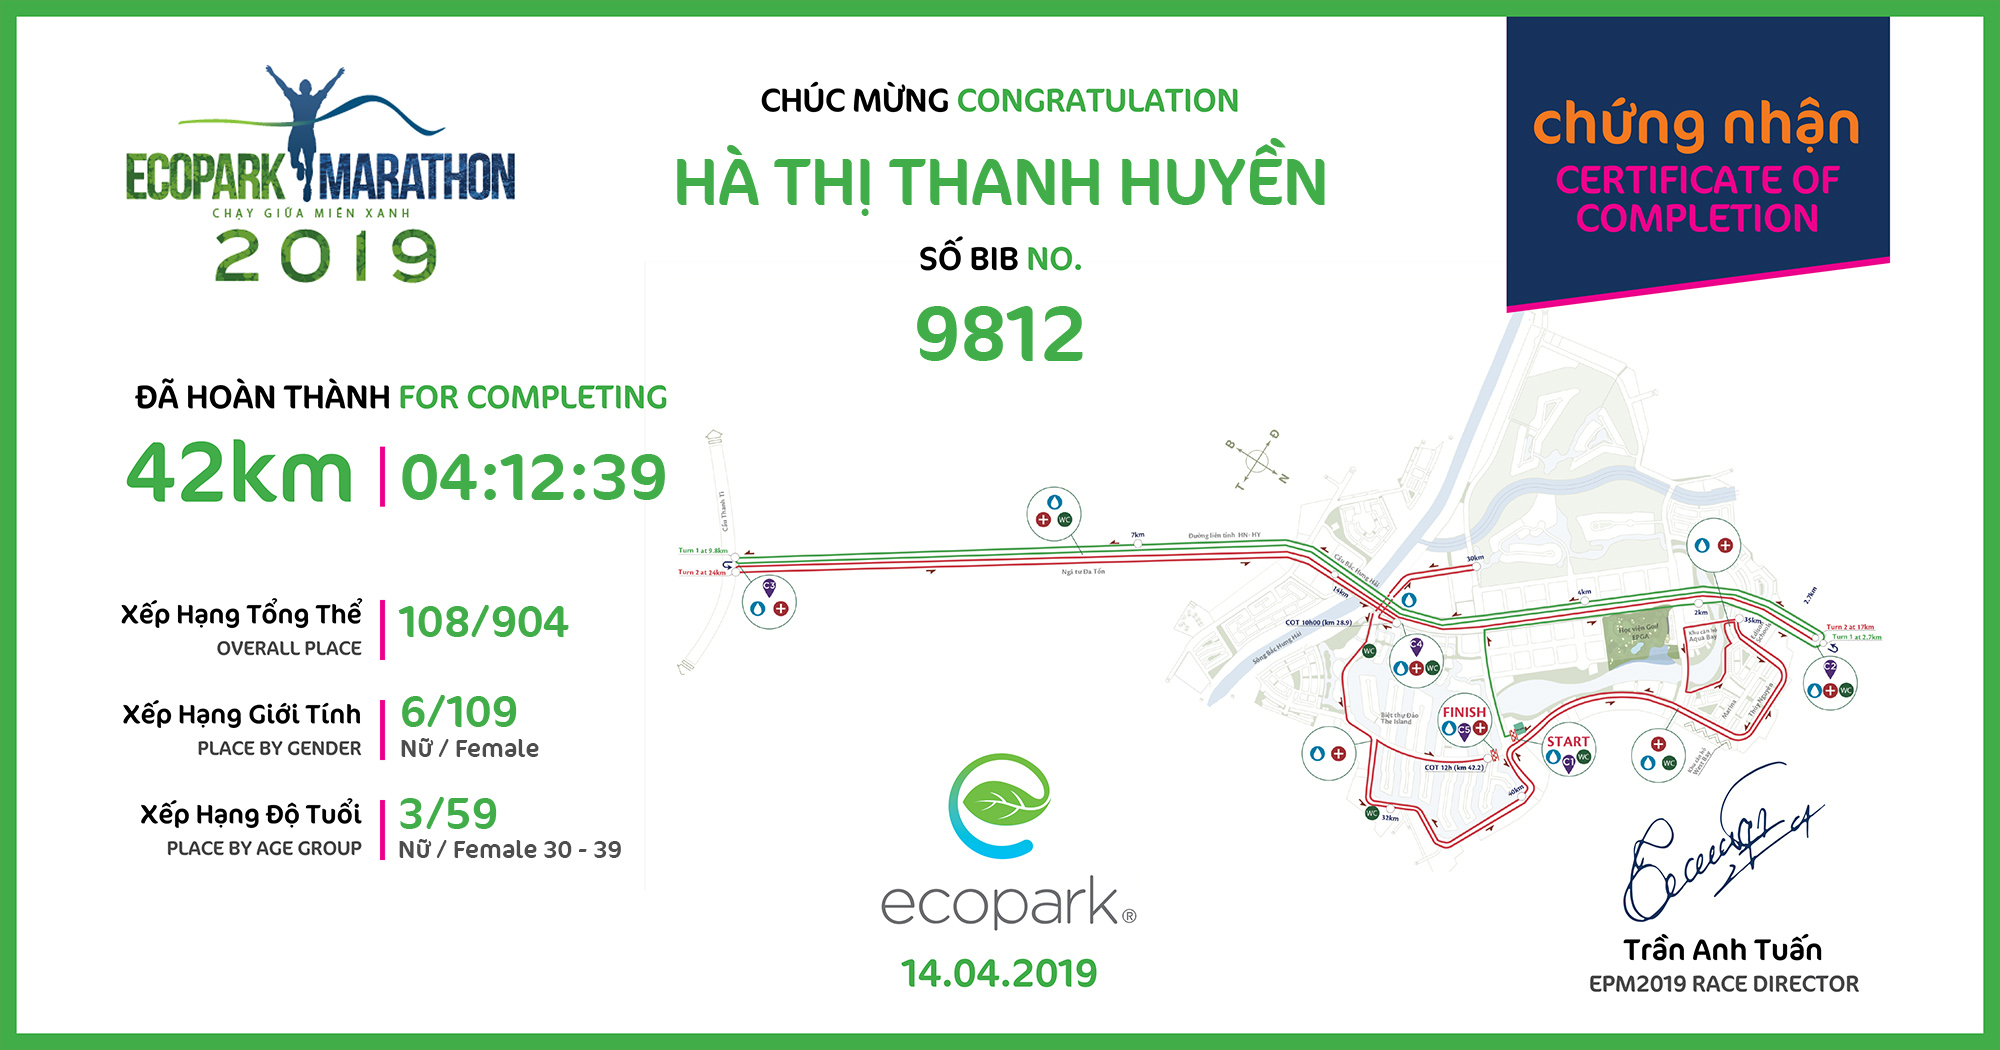 9812 - Hà Thị Thanh Huyền